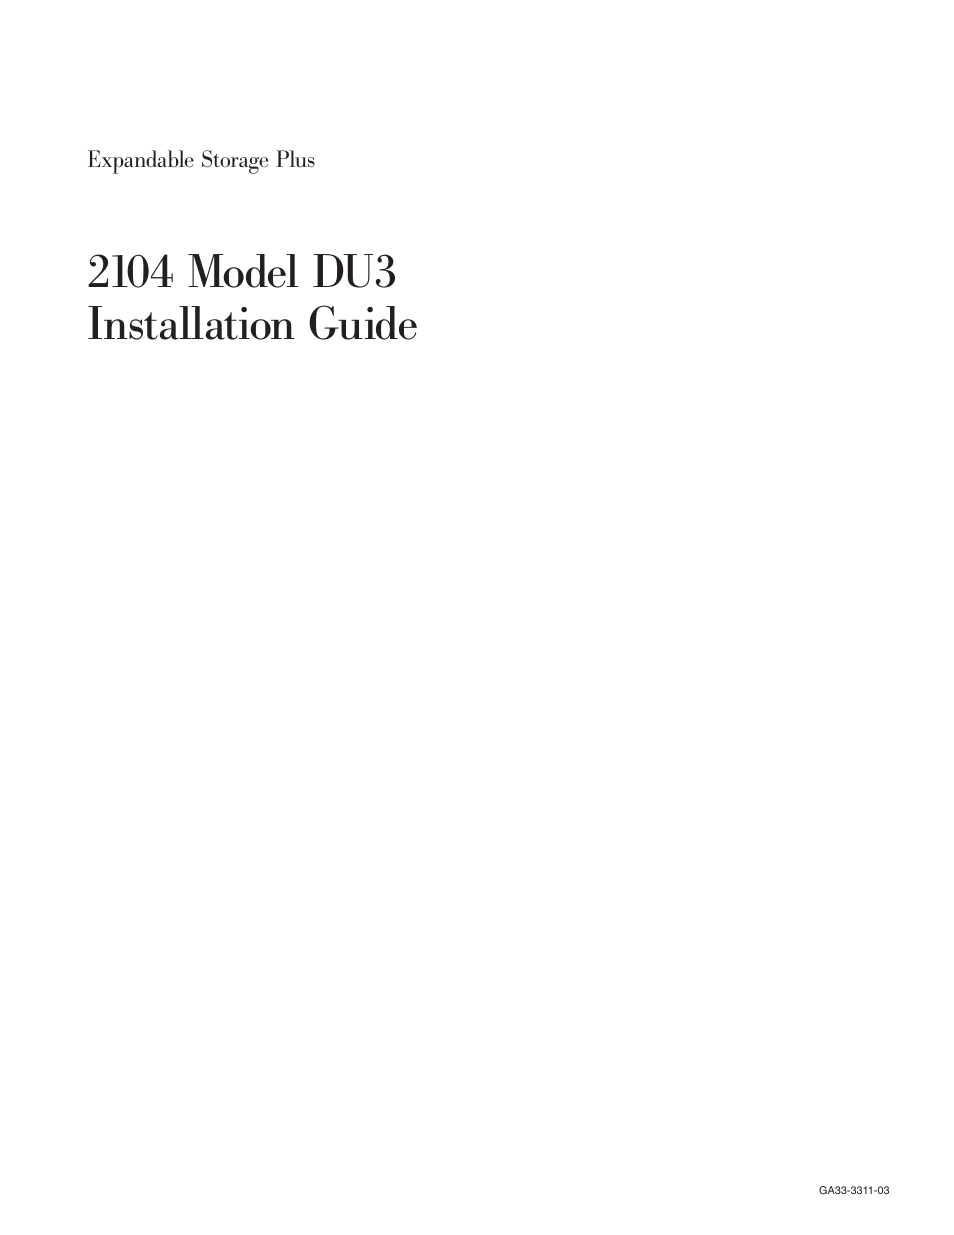 IBM 2104 Model DU3 User Manual | 114 pages